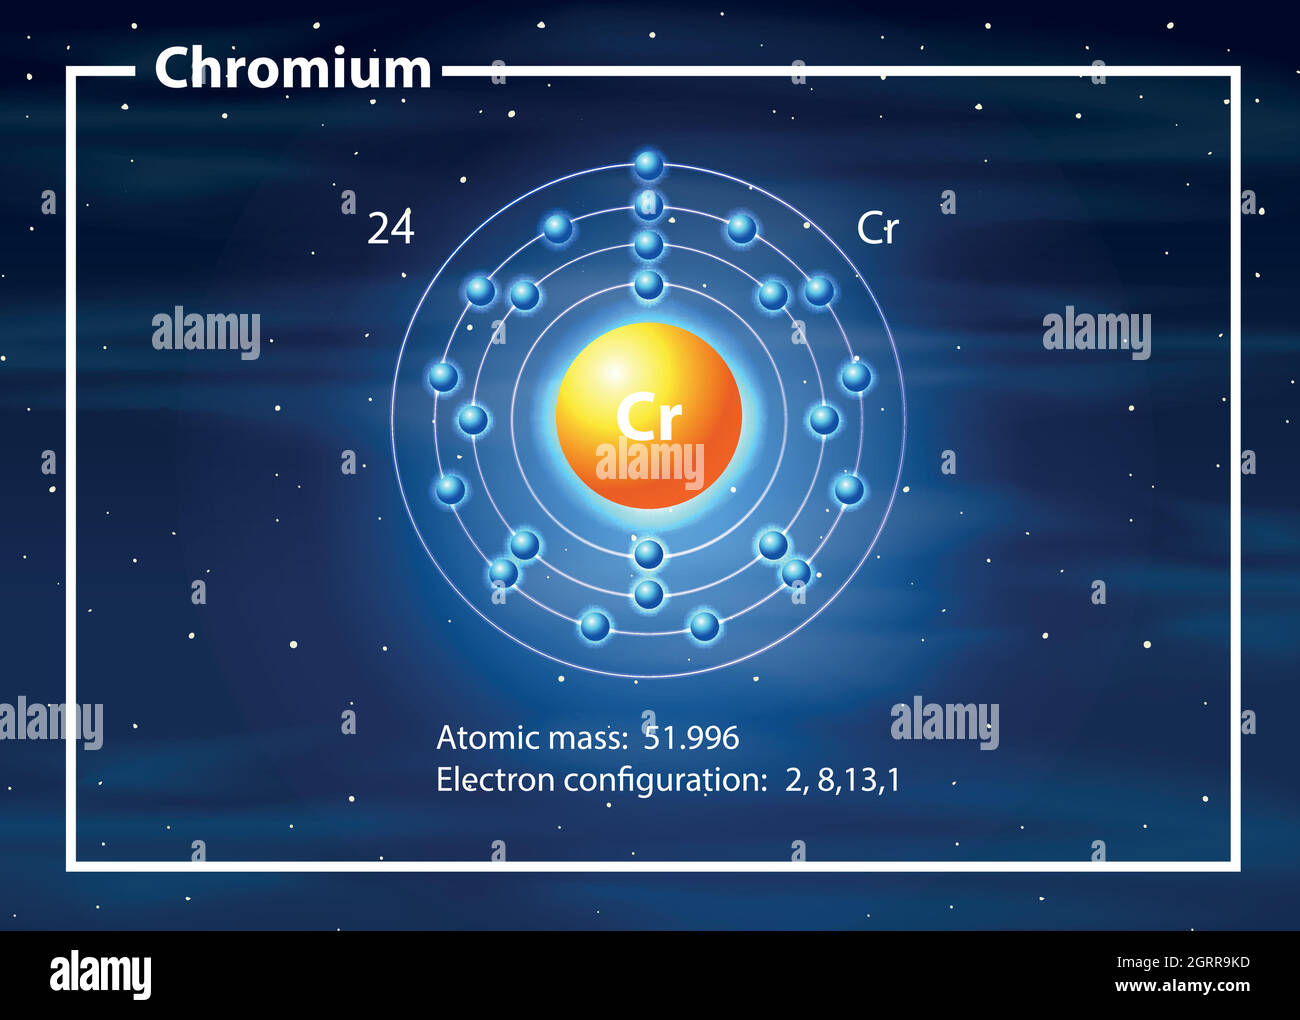 A chromium atom diagram Stock Vector